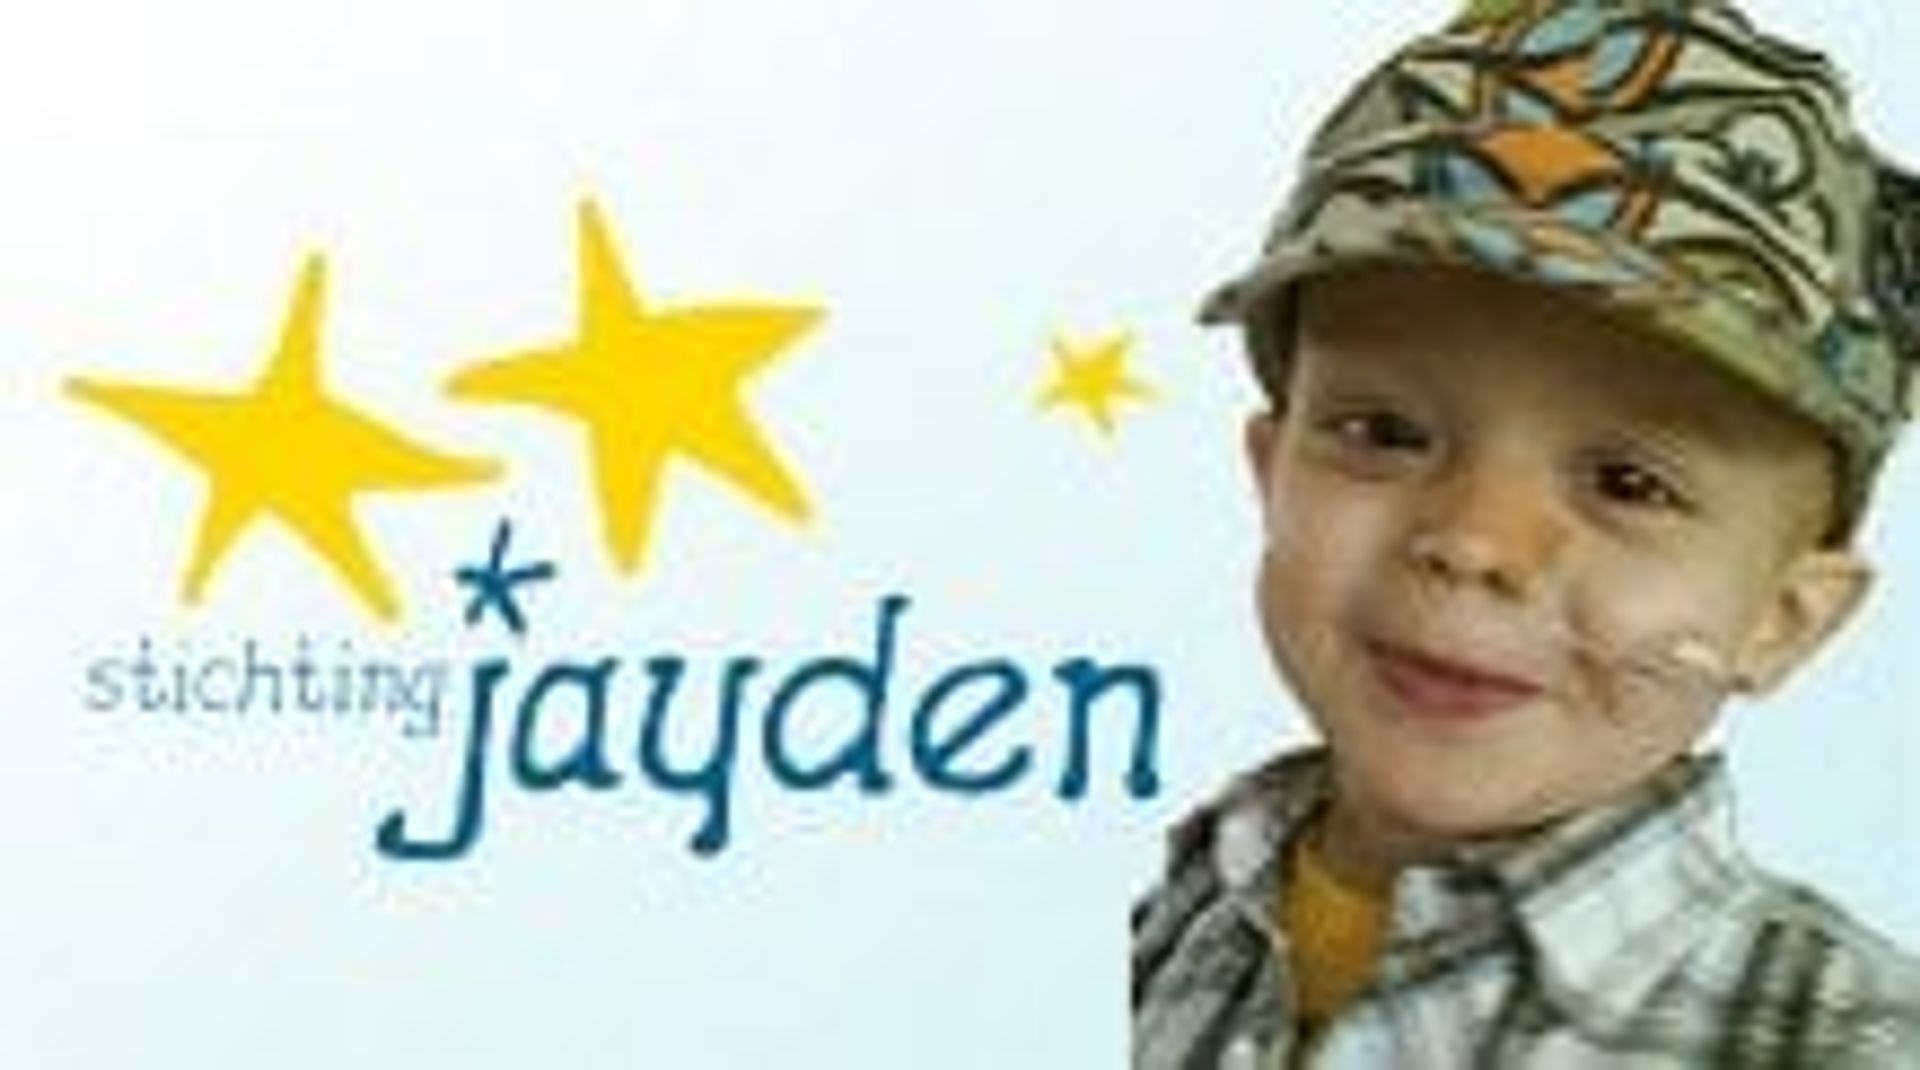 Stichting Jayden